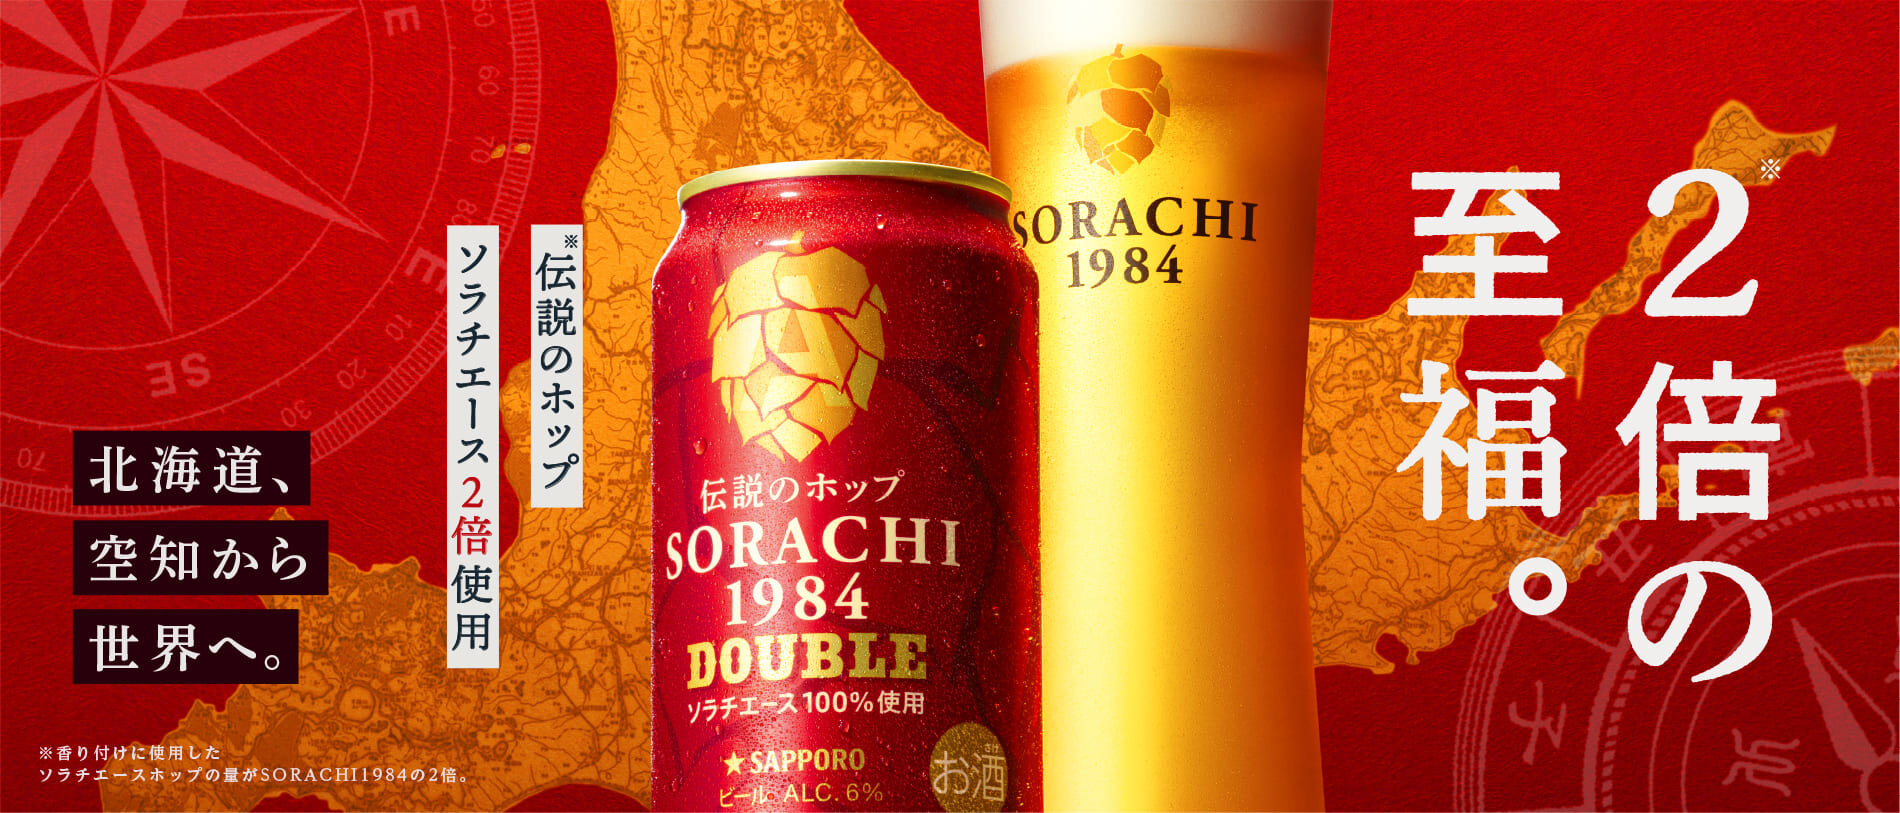 SORACHI 1984 | サッポロビール